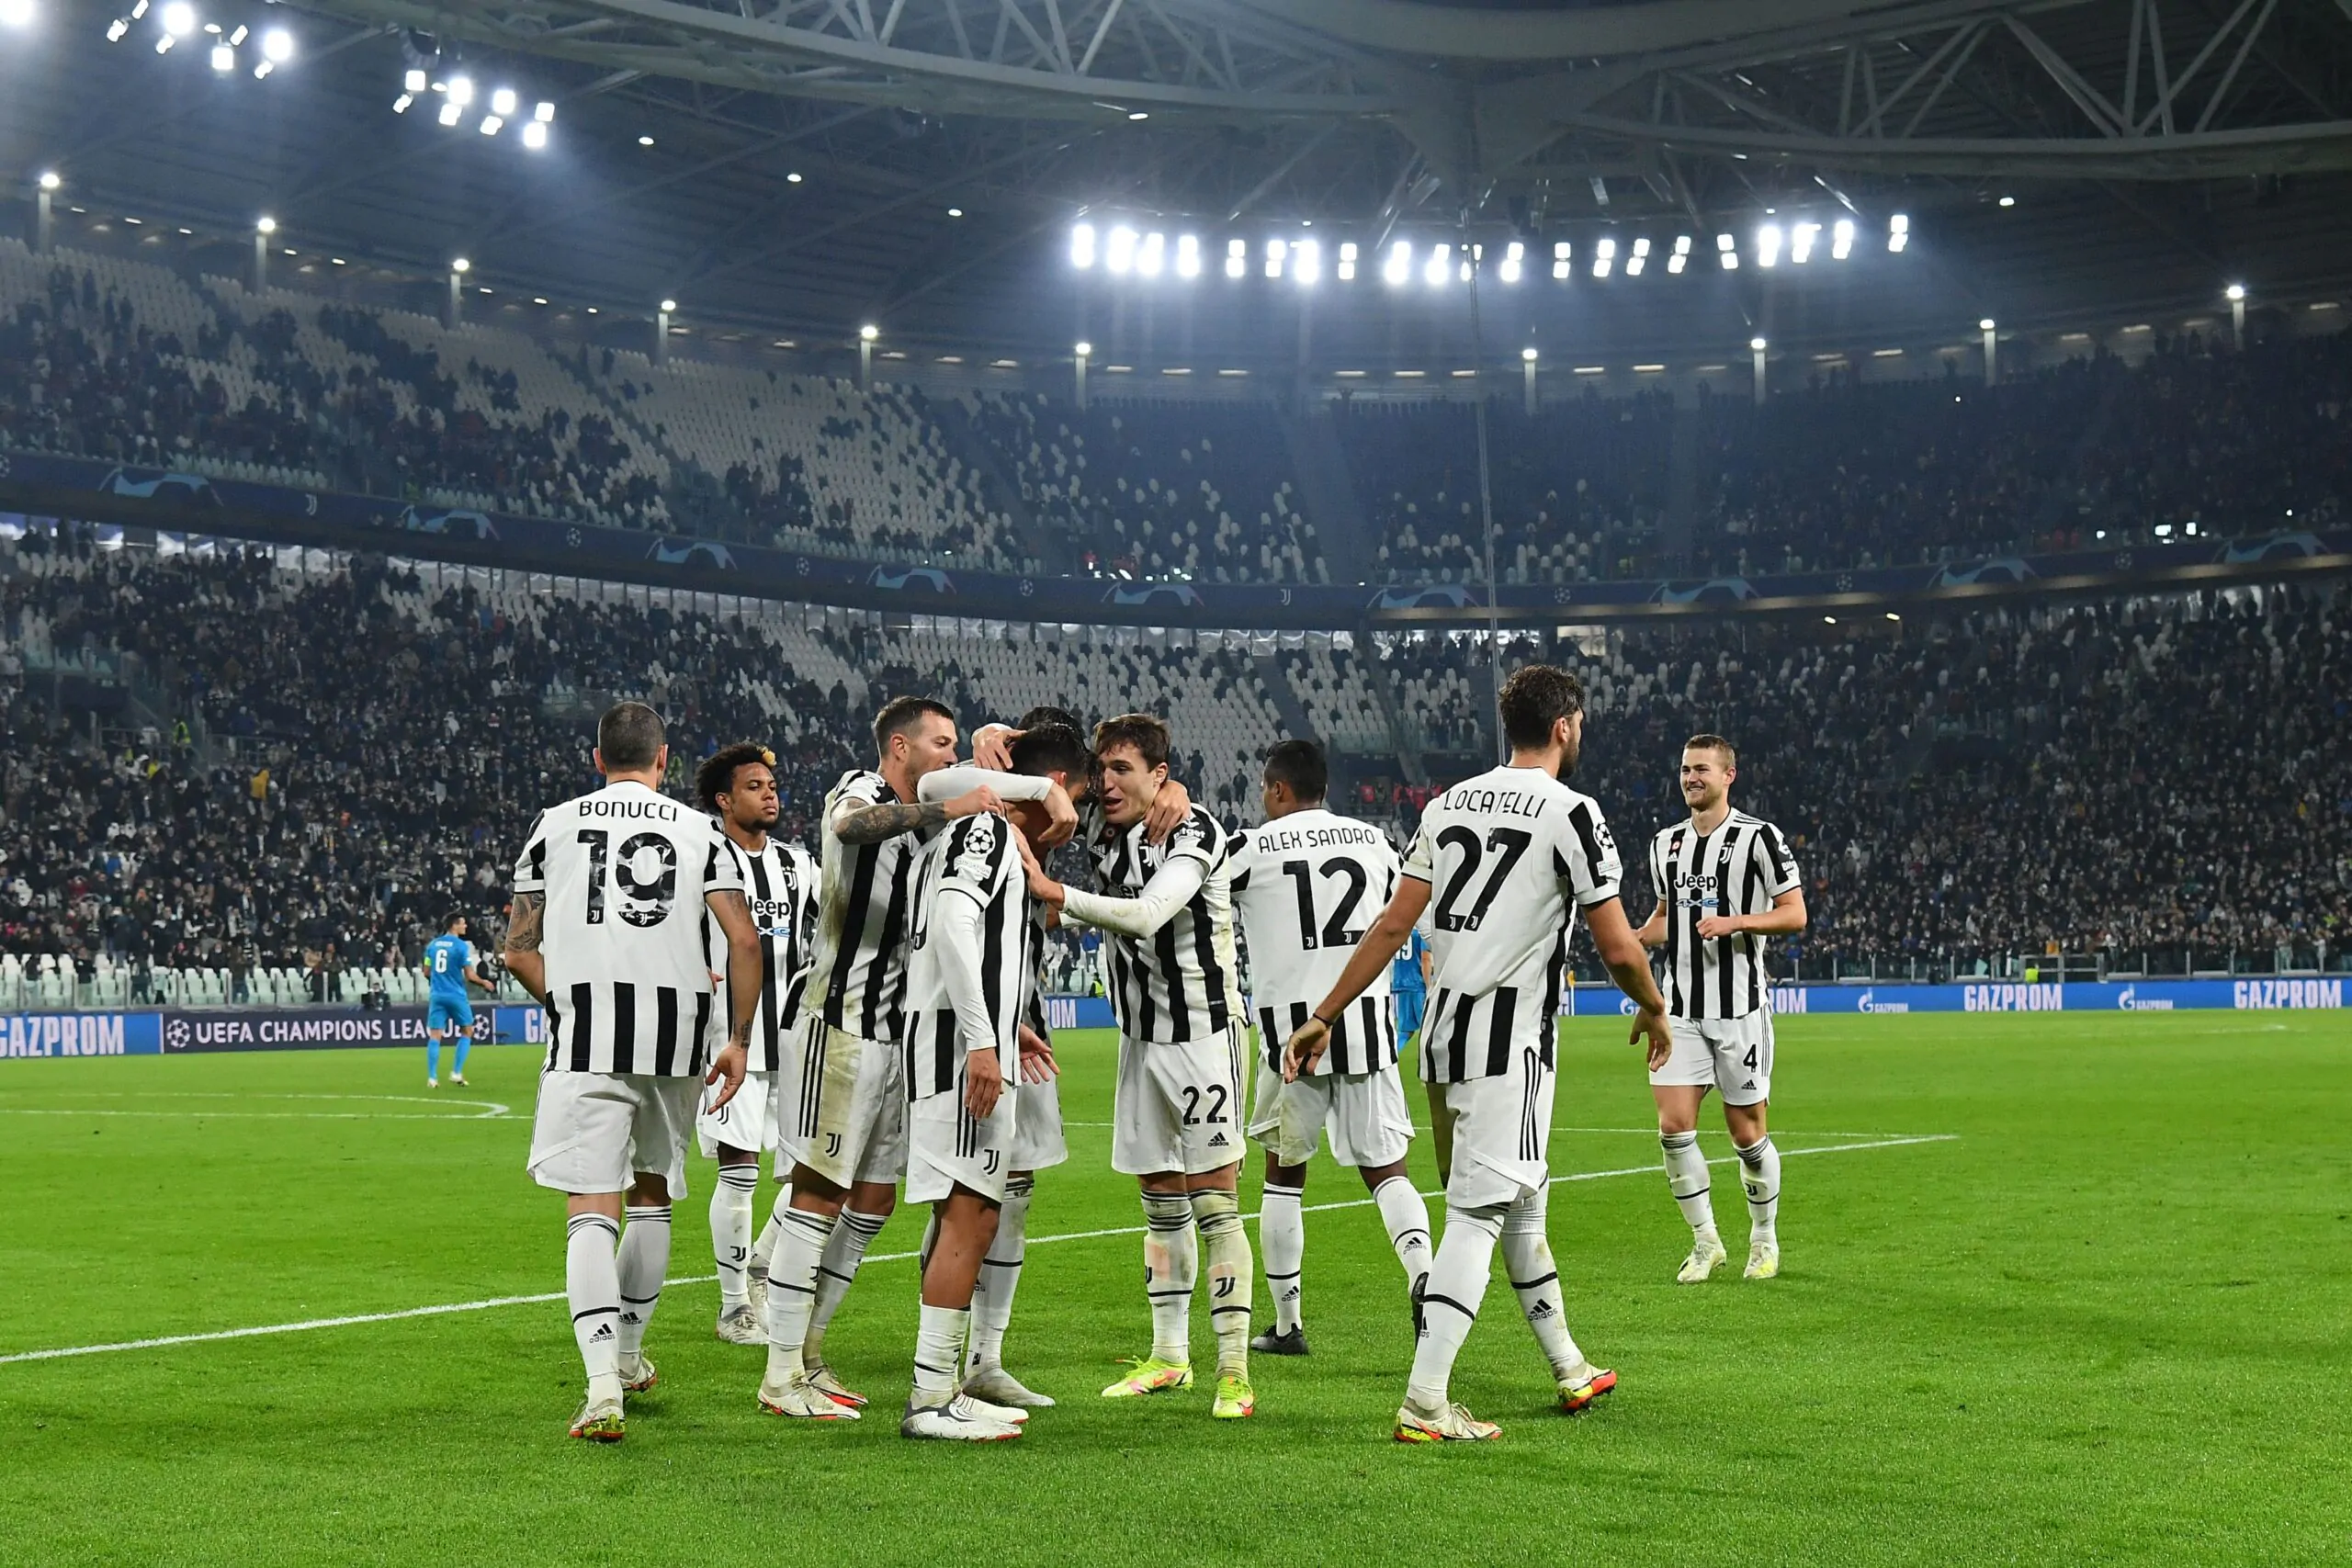 L’esperto sicuro: “Juventus? Resta sul filo anche la qualificazione alla Champions League!”